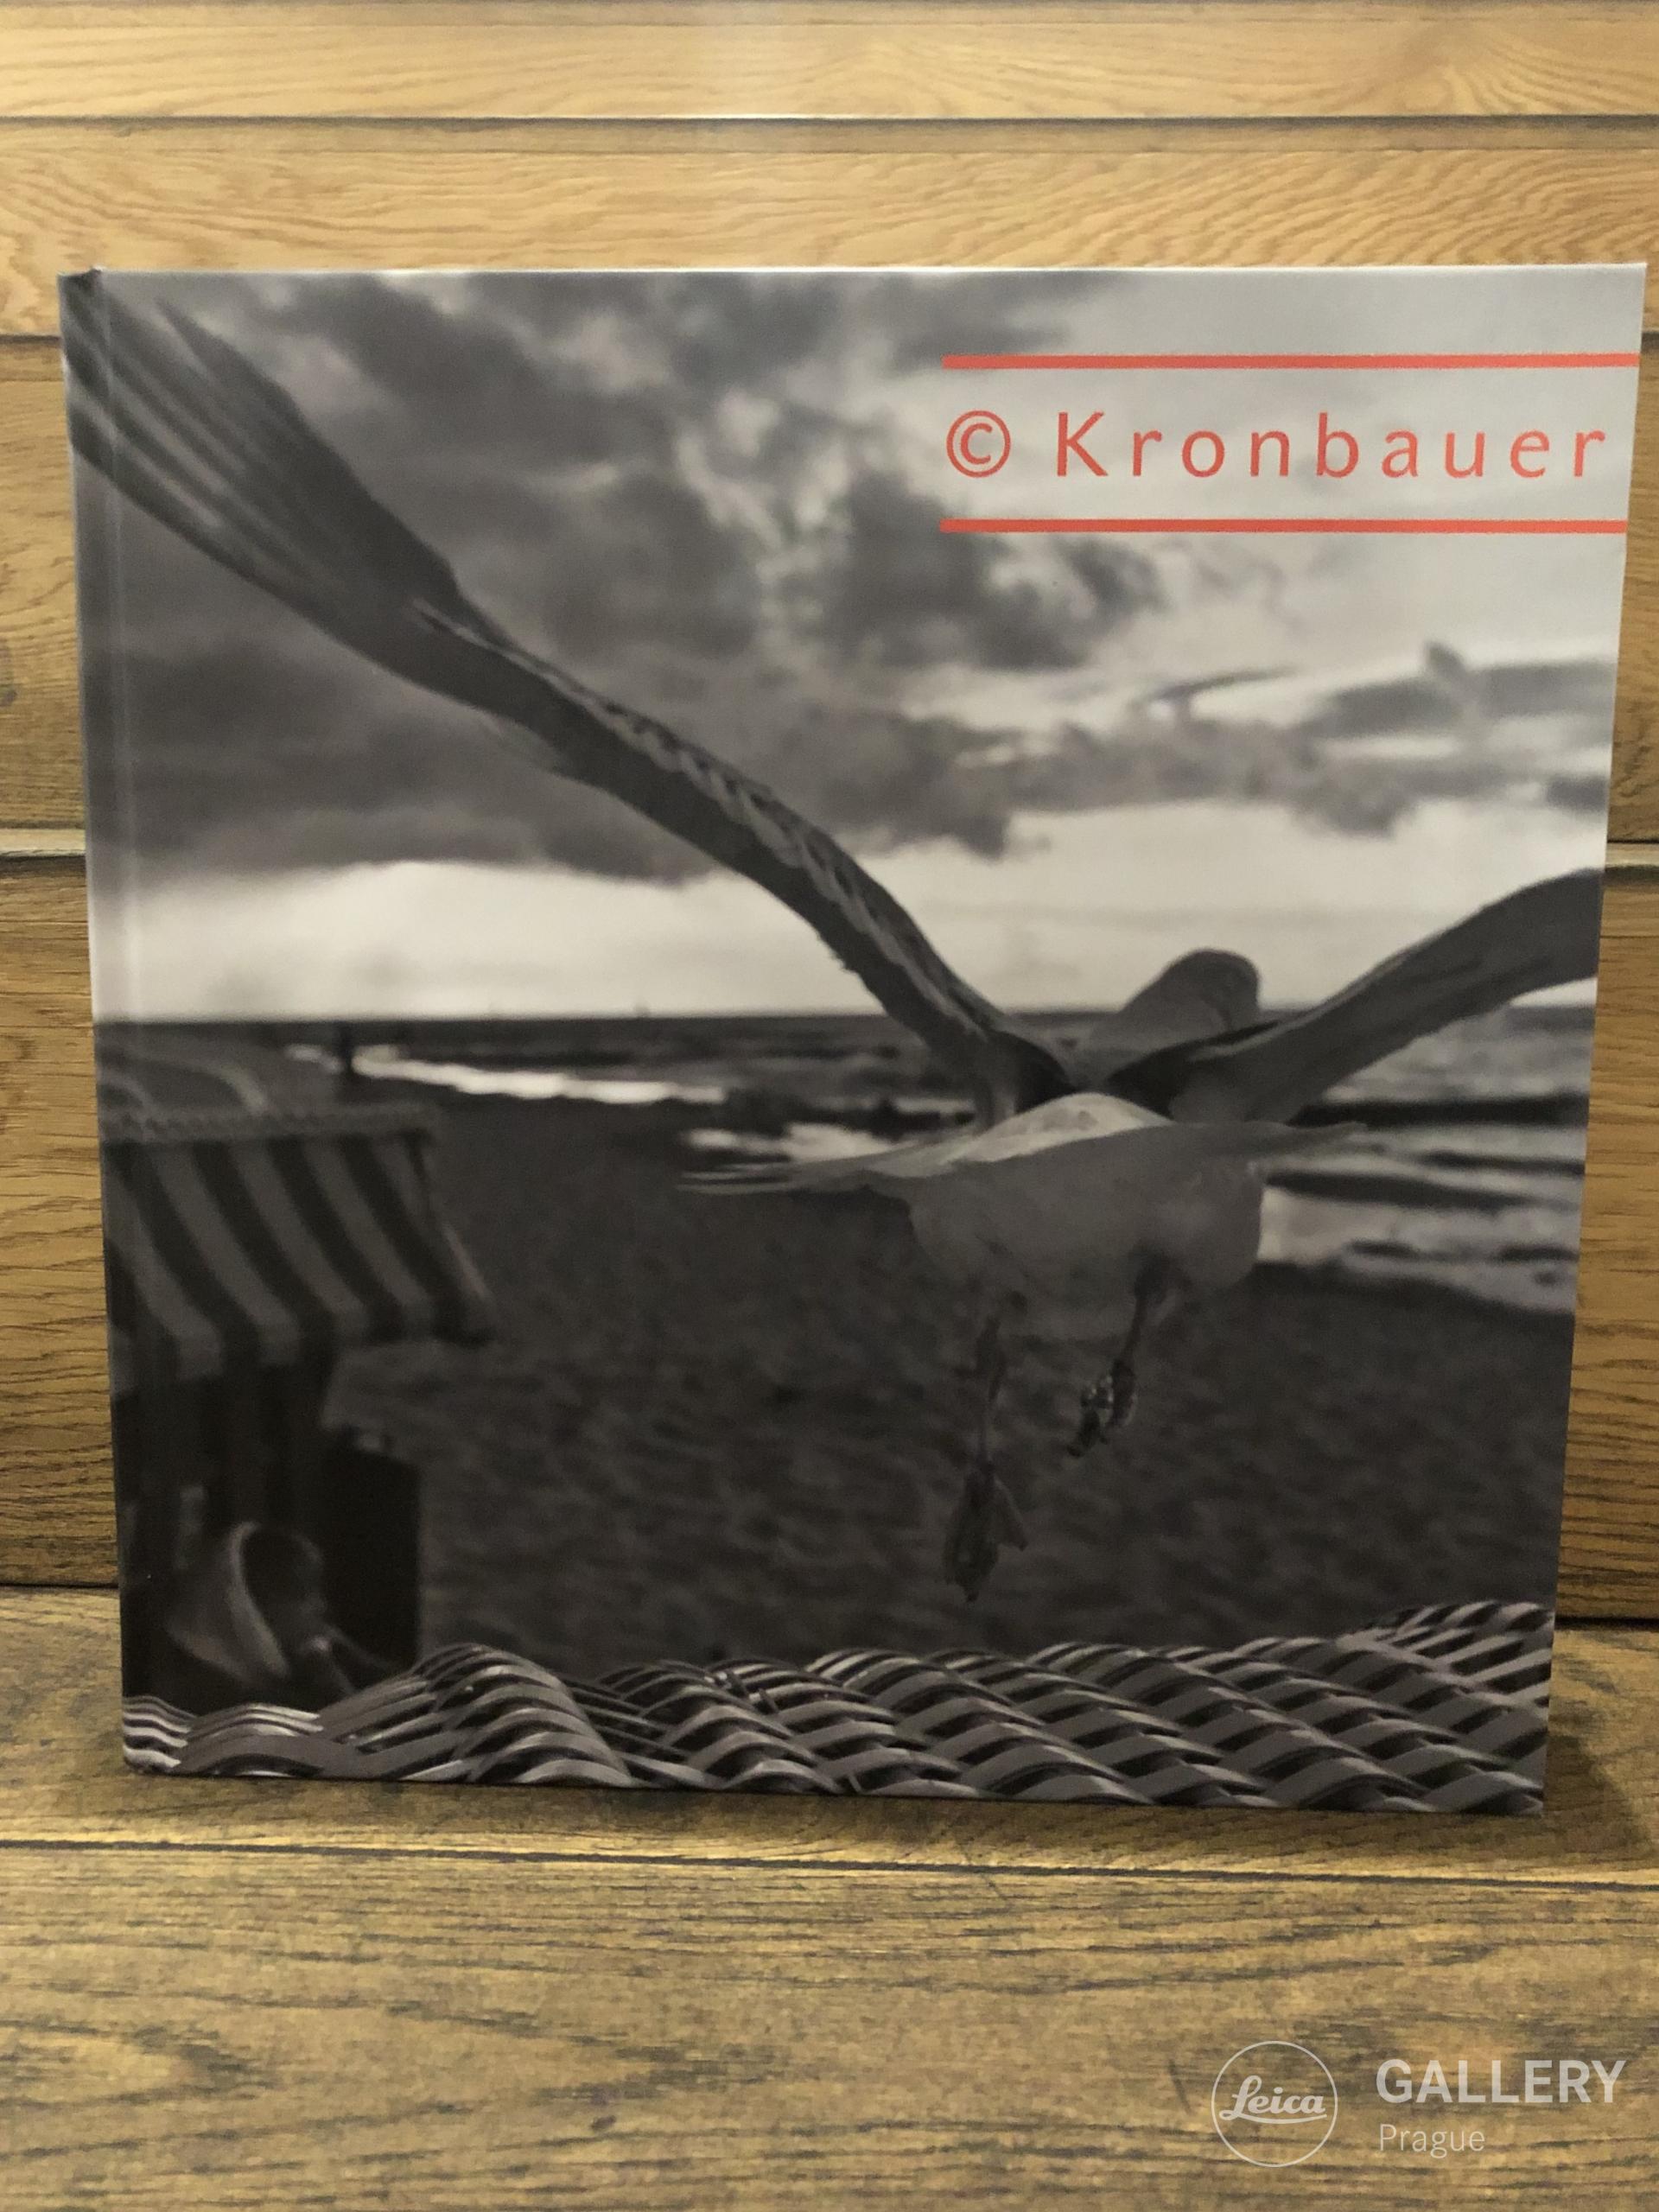 Kronbauer